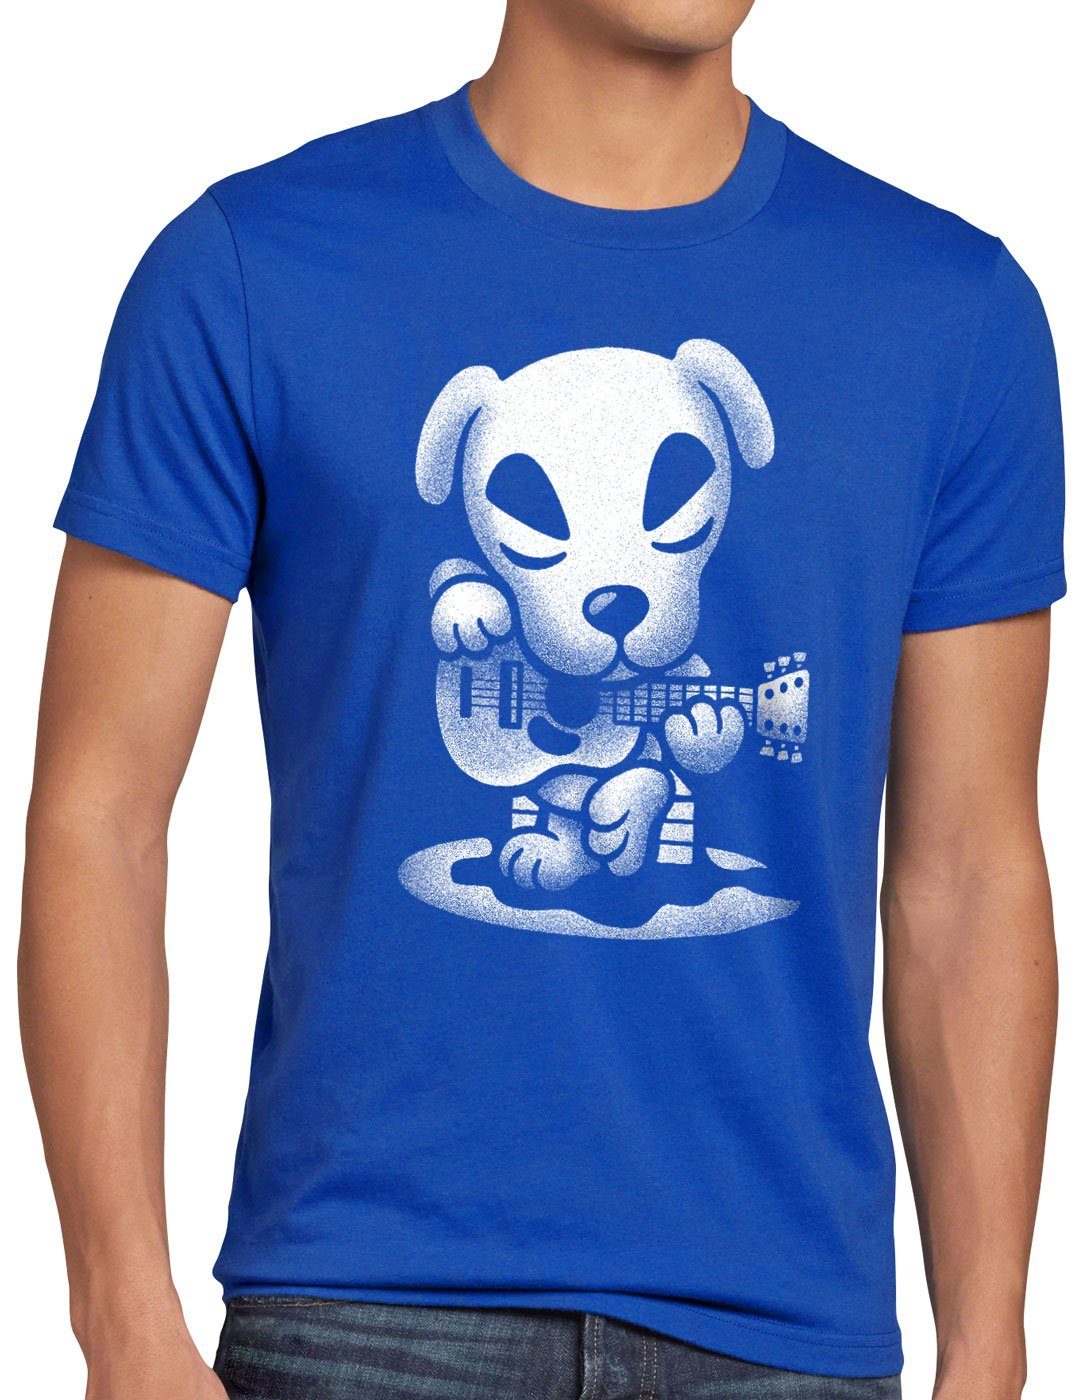 meistverkauft style3 Print-Shirt Herren videospiel horizons T-Shirt Gitarre Slider switch blau animal